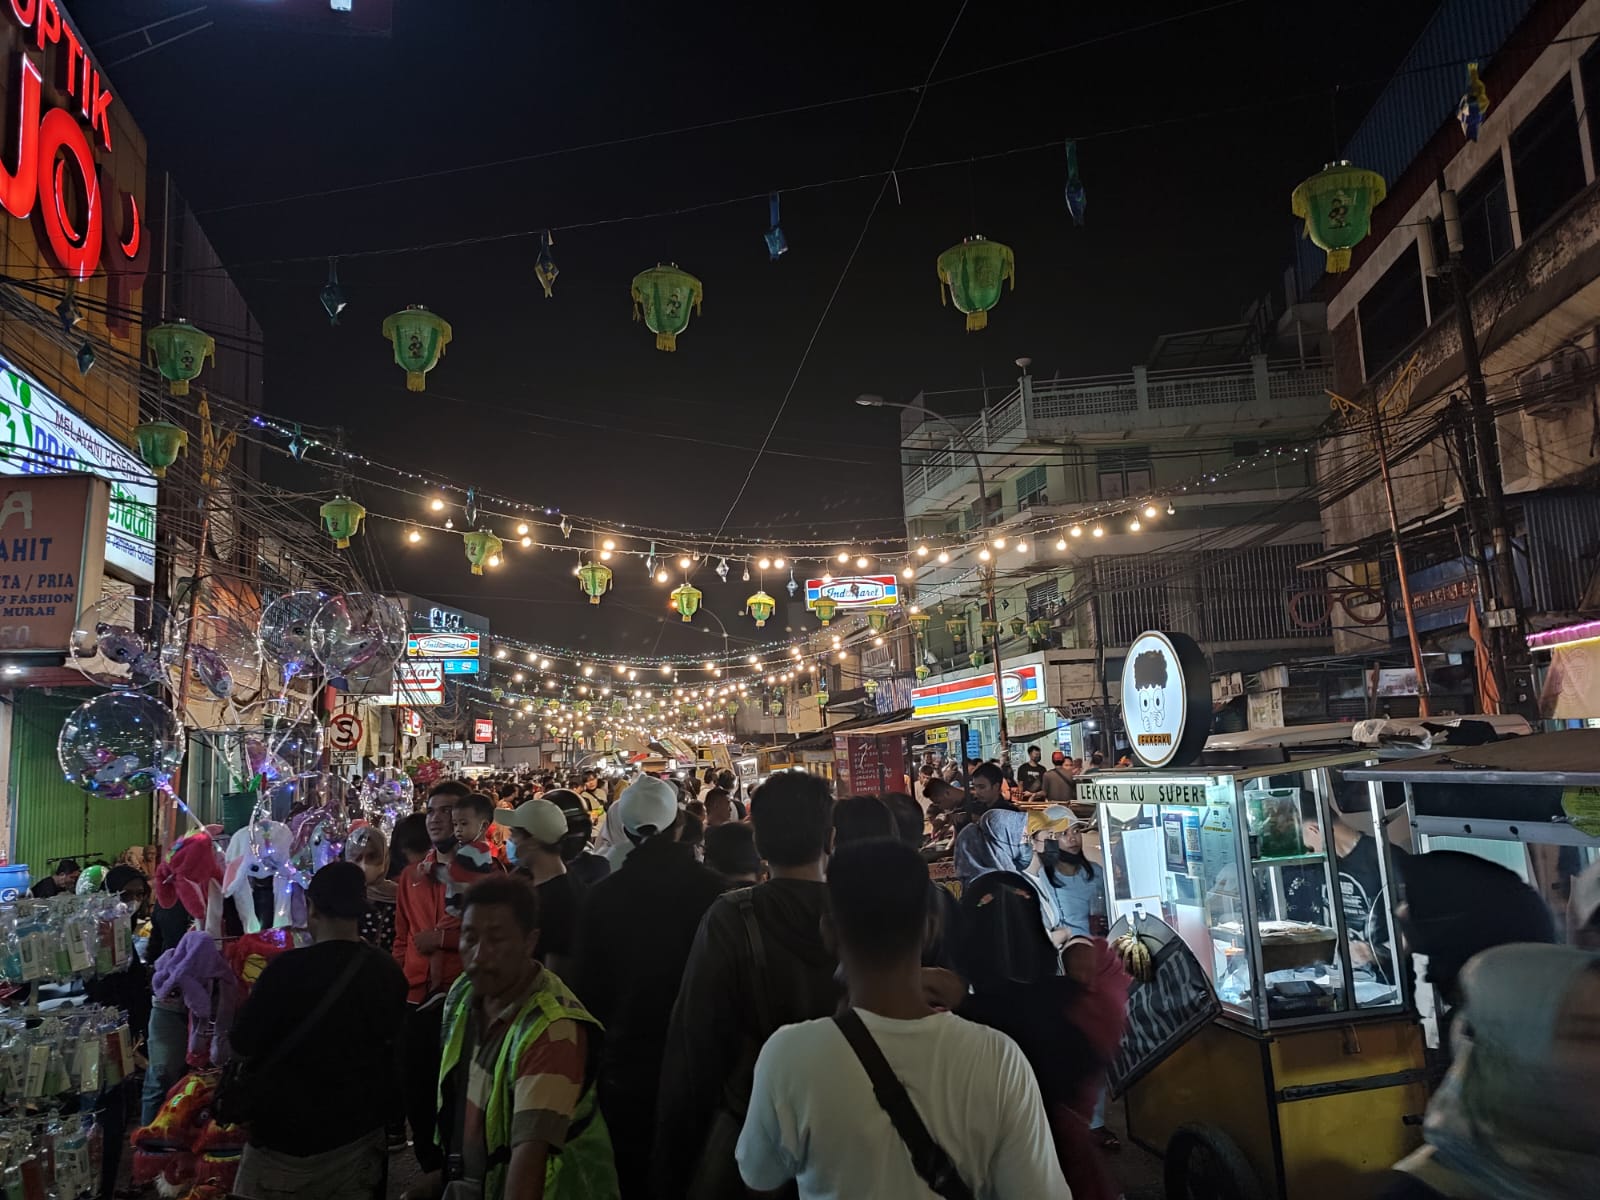 Pedagang Pusat Kuliner Pasar Lama Tangerang Untung 4 Kali Lipat, Penuh Sesak Saat Libur Lebaran